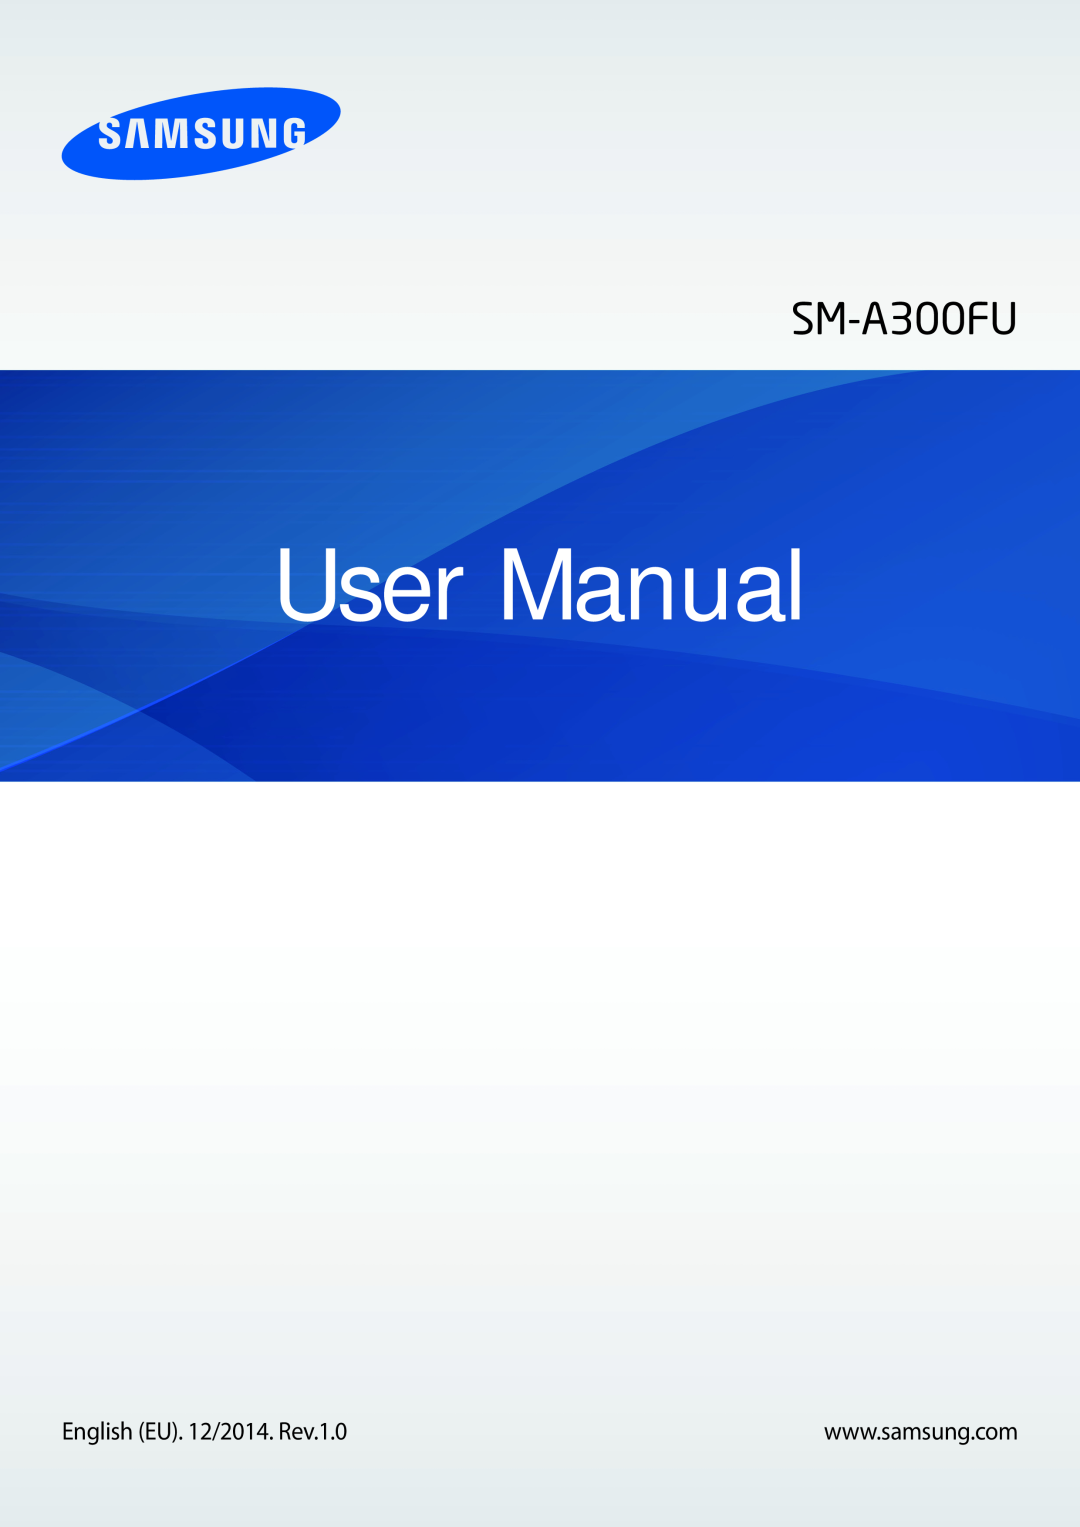 Samsung SM-A300FZDUMEO, SM-A300FZDDSEE, SM-A300FZDUXEO, SM-A300FZWUVGR, SM-A300FZWUTCL manual User Manual, SM-A300FU 